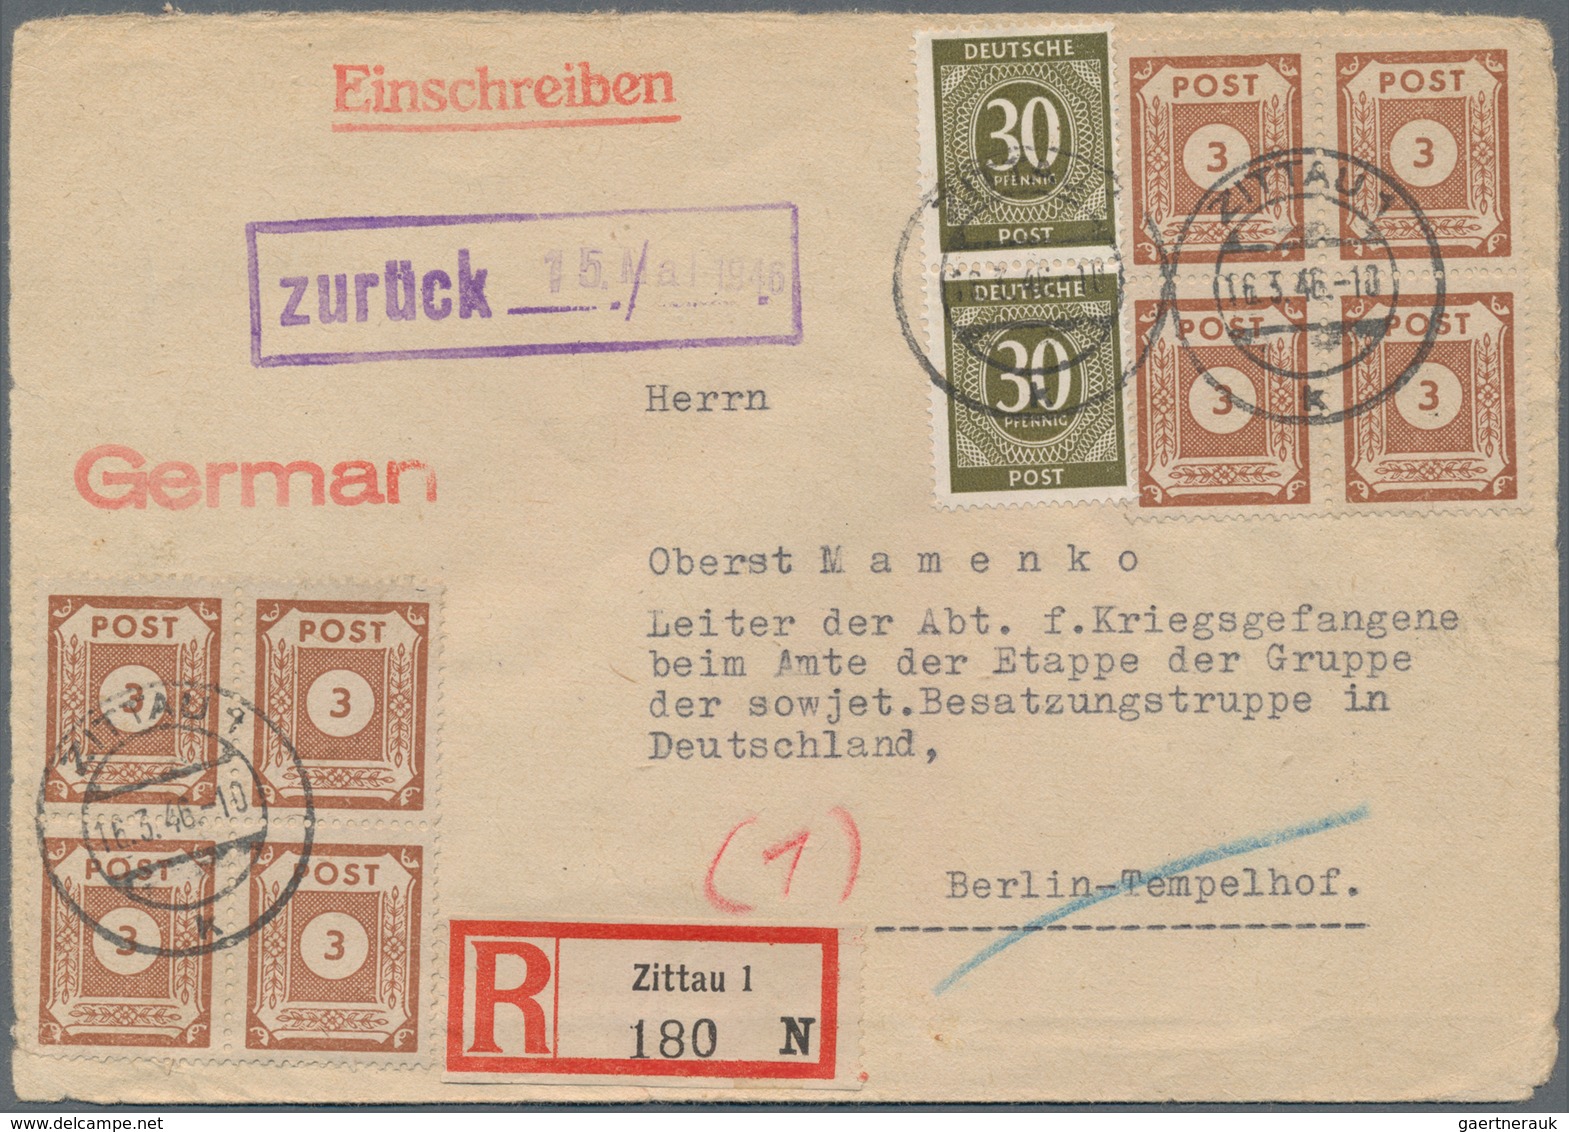 Deutschland nach 1945: 1945/1949, NACHKRIEGSDEUTSCHLAND, gehaltvoller Sammlungsbestand mit ca.180 Be